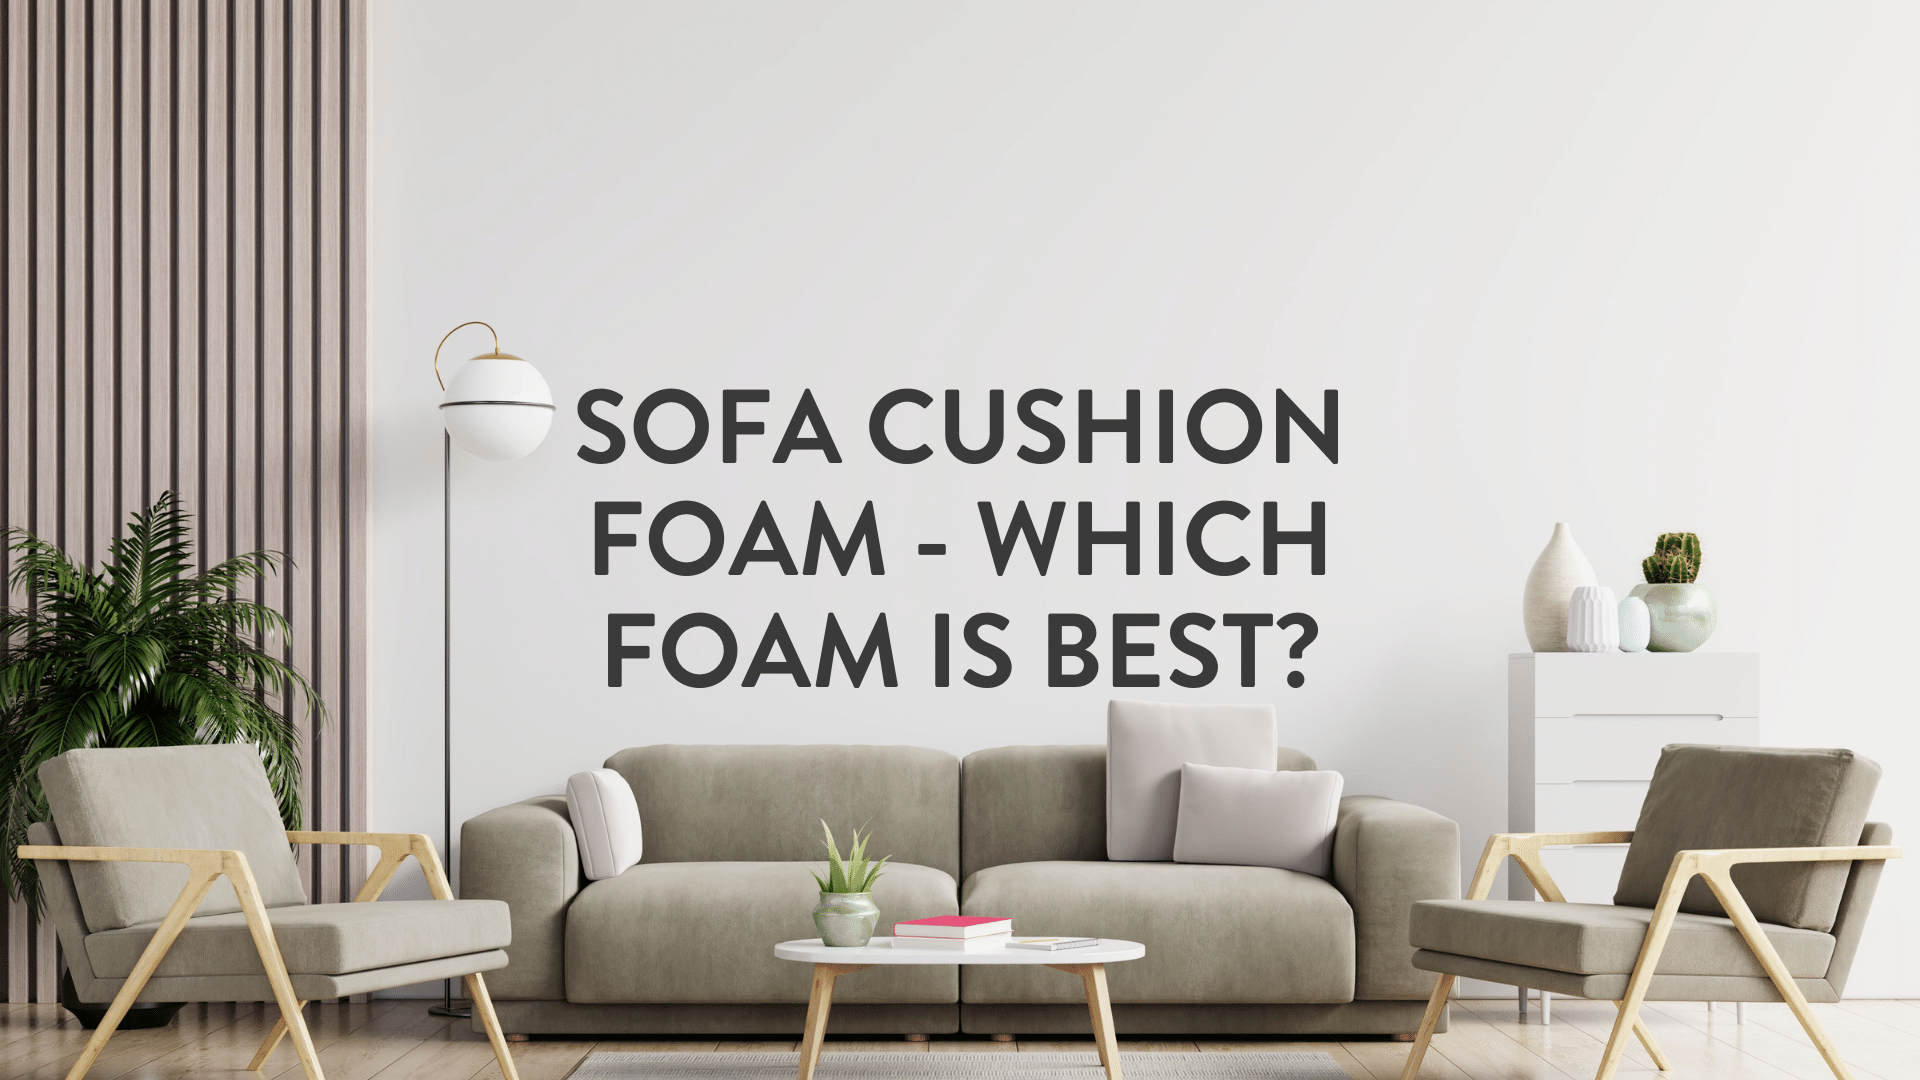 Feather & Fibre Cushions - Foam 4 U